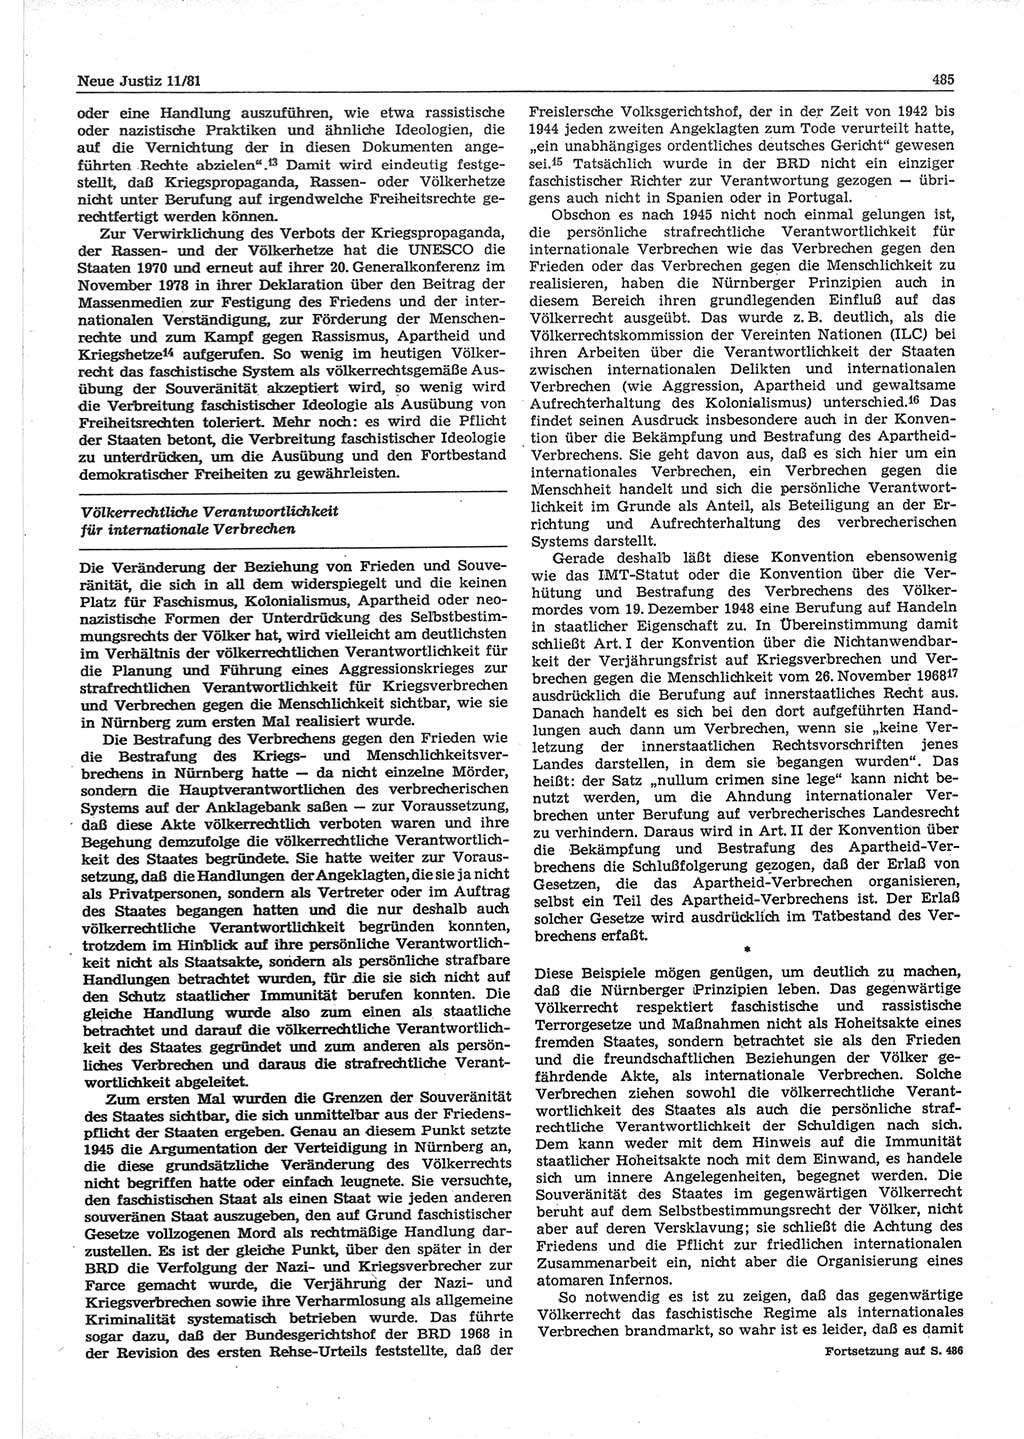 Neue Justiz (NJ), Zeitschrift für sozialistisches Recht und Gesetzlichkeit [Deutsche Demokratische Republik (DDR)], 35. Jahrgang 1981, Seite 485 (NJ DDR 1981, S. 485)